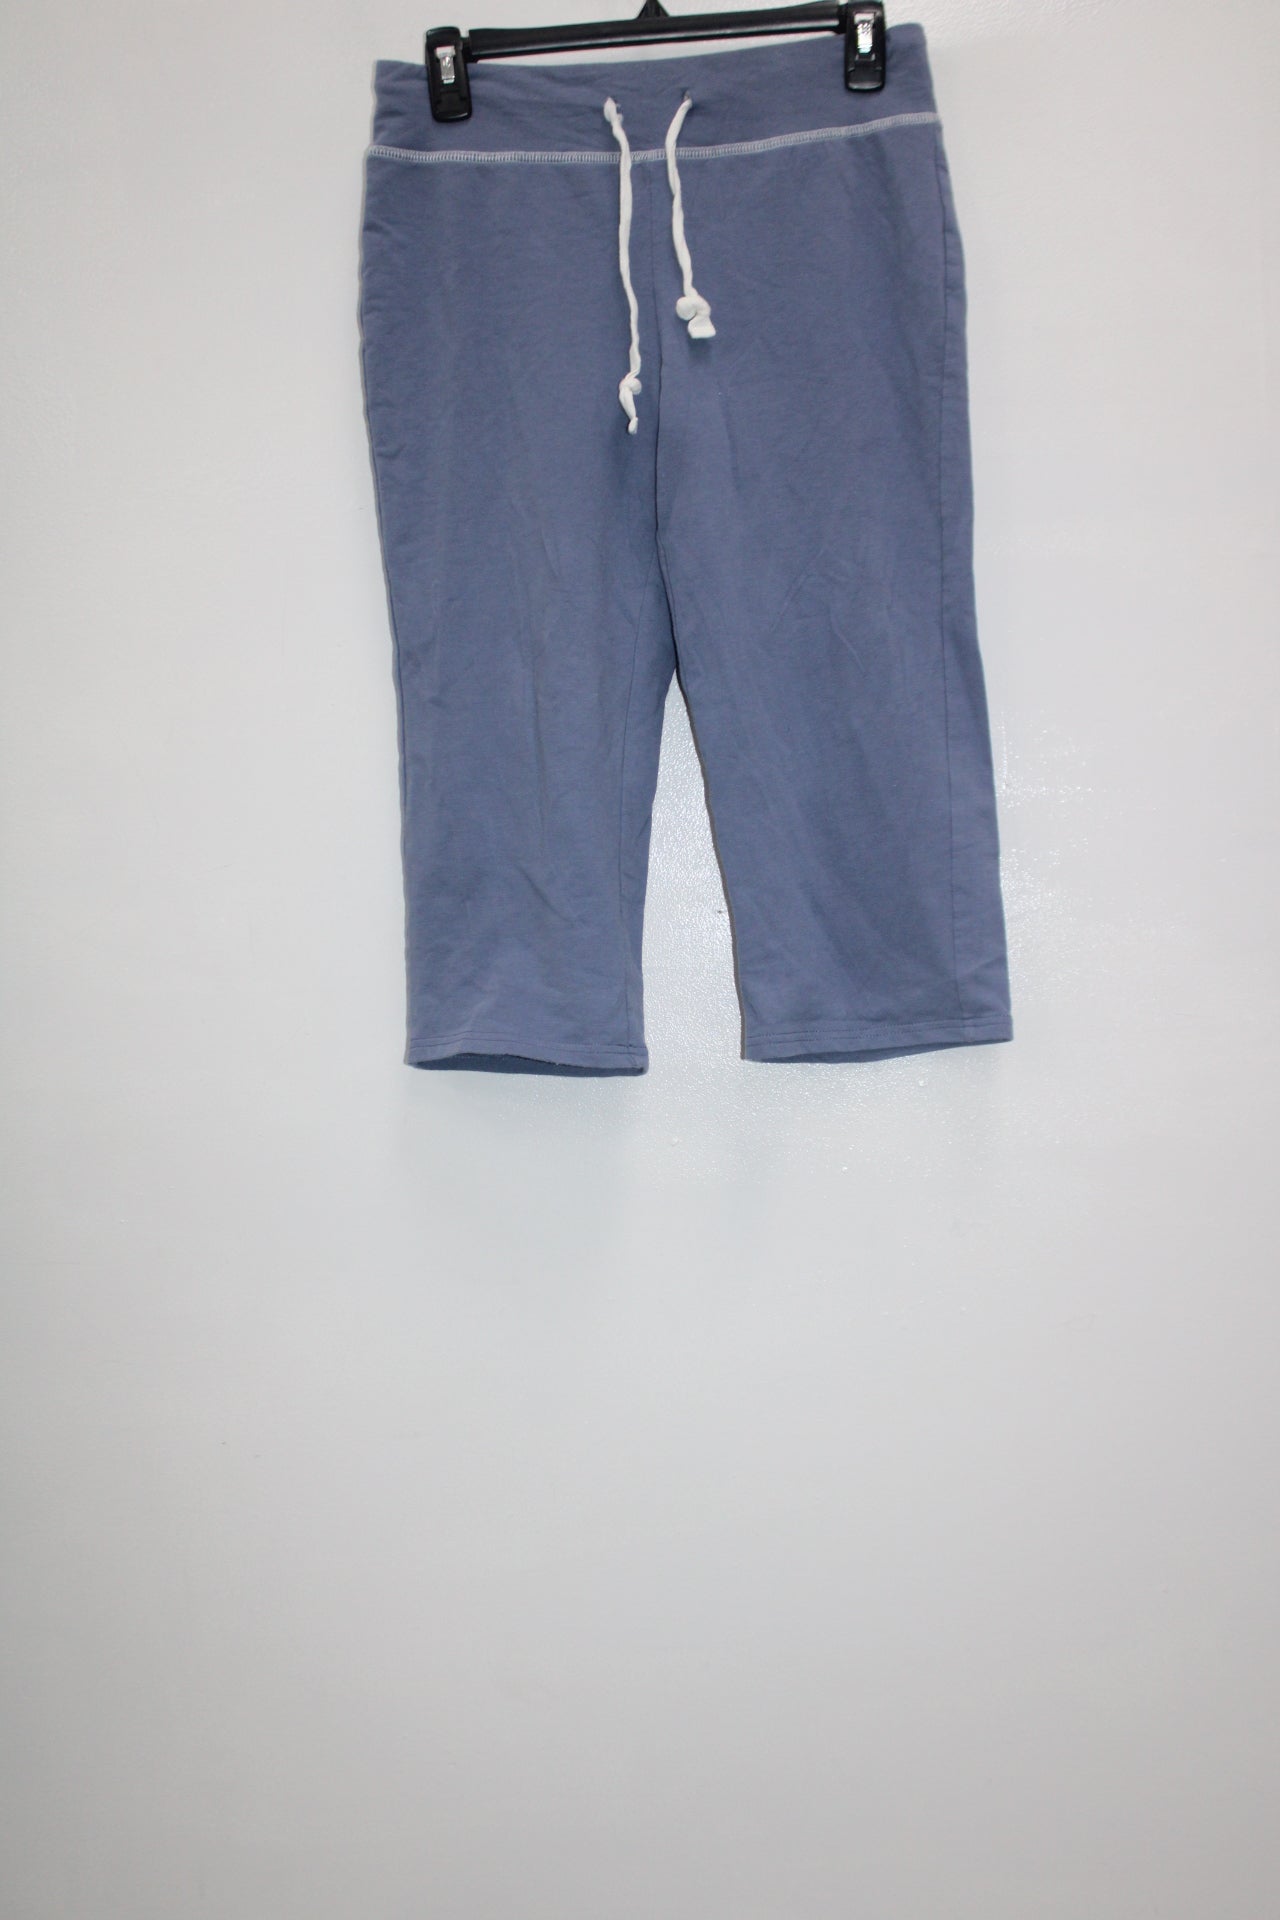 Silverwear Women's Capri Blue PS Pre-Owned